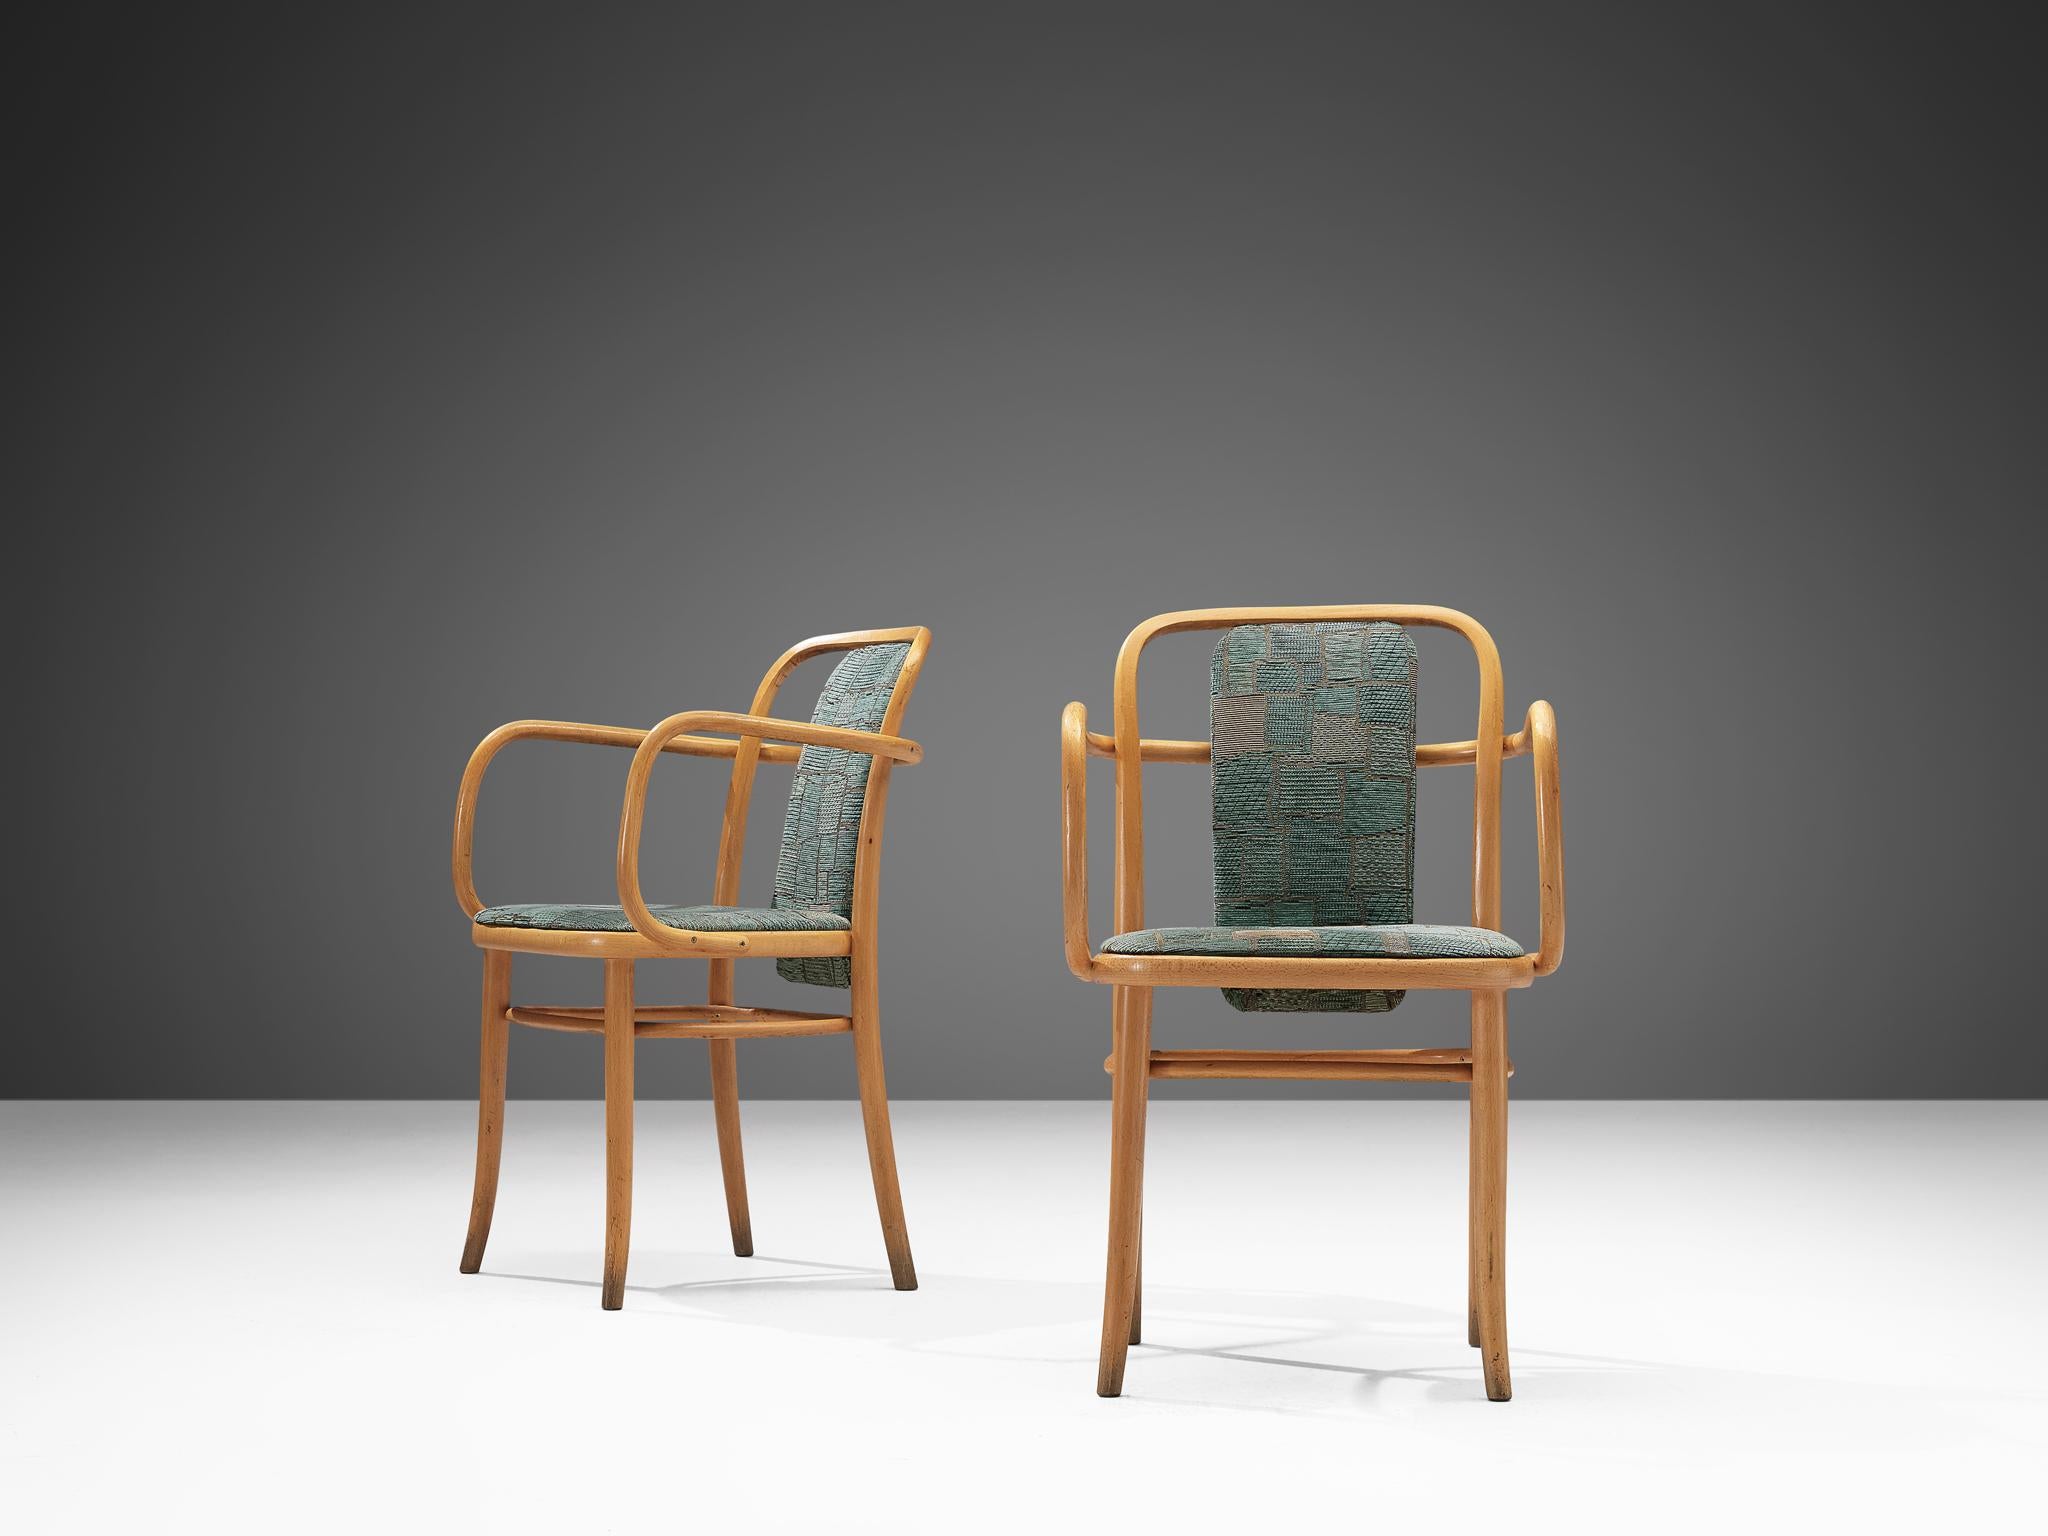 Esszimmerstühle, Bugholz und aquamarinfarbene Polsterung, Europa, 1960er Jahre.
 
Ein Paar elegante Sessel aus Bugholz. Die Armlehnen aus Bugholz haben geschwungene Linien, die über die offenen Rückenlehnen fließen. Mit der gepolsterten Rückenlehne